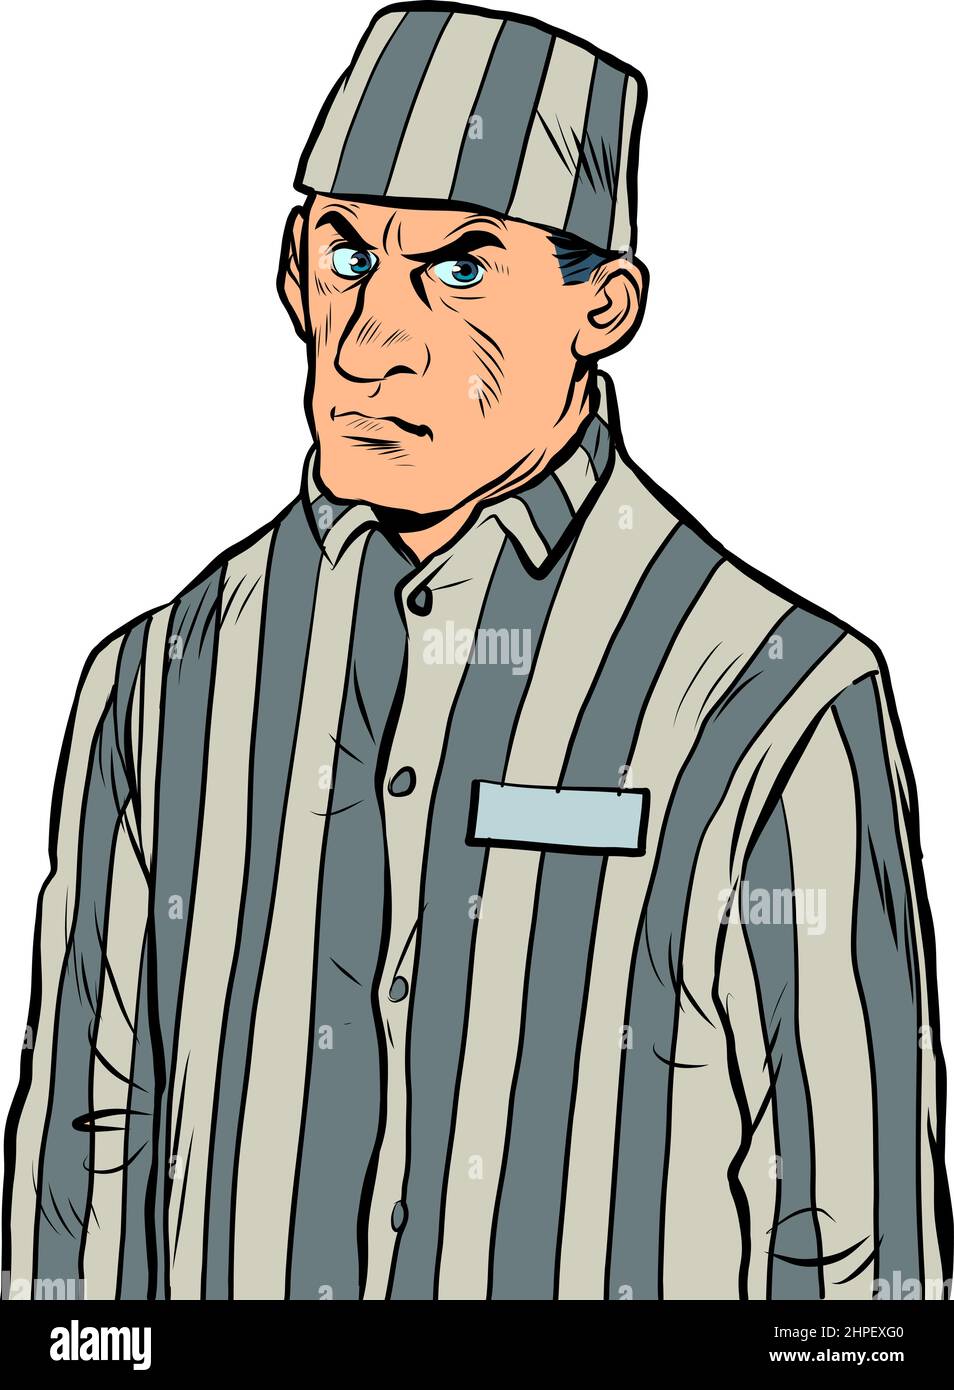 a prisoner in a striped uniform, a dangerous criminal. A lawbreaker in prison Stock Vector